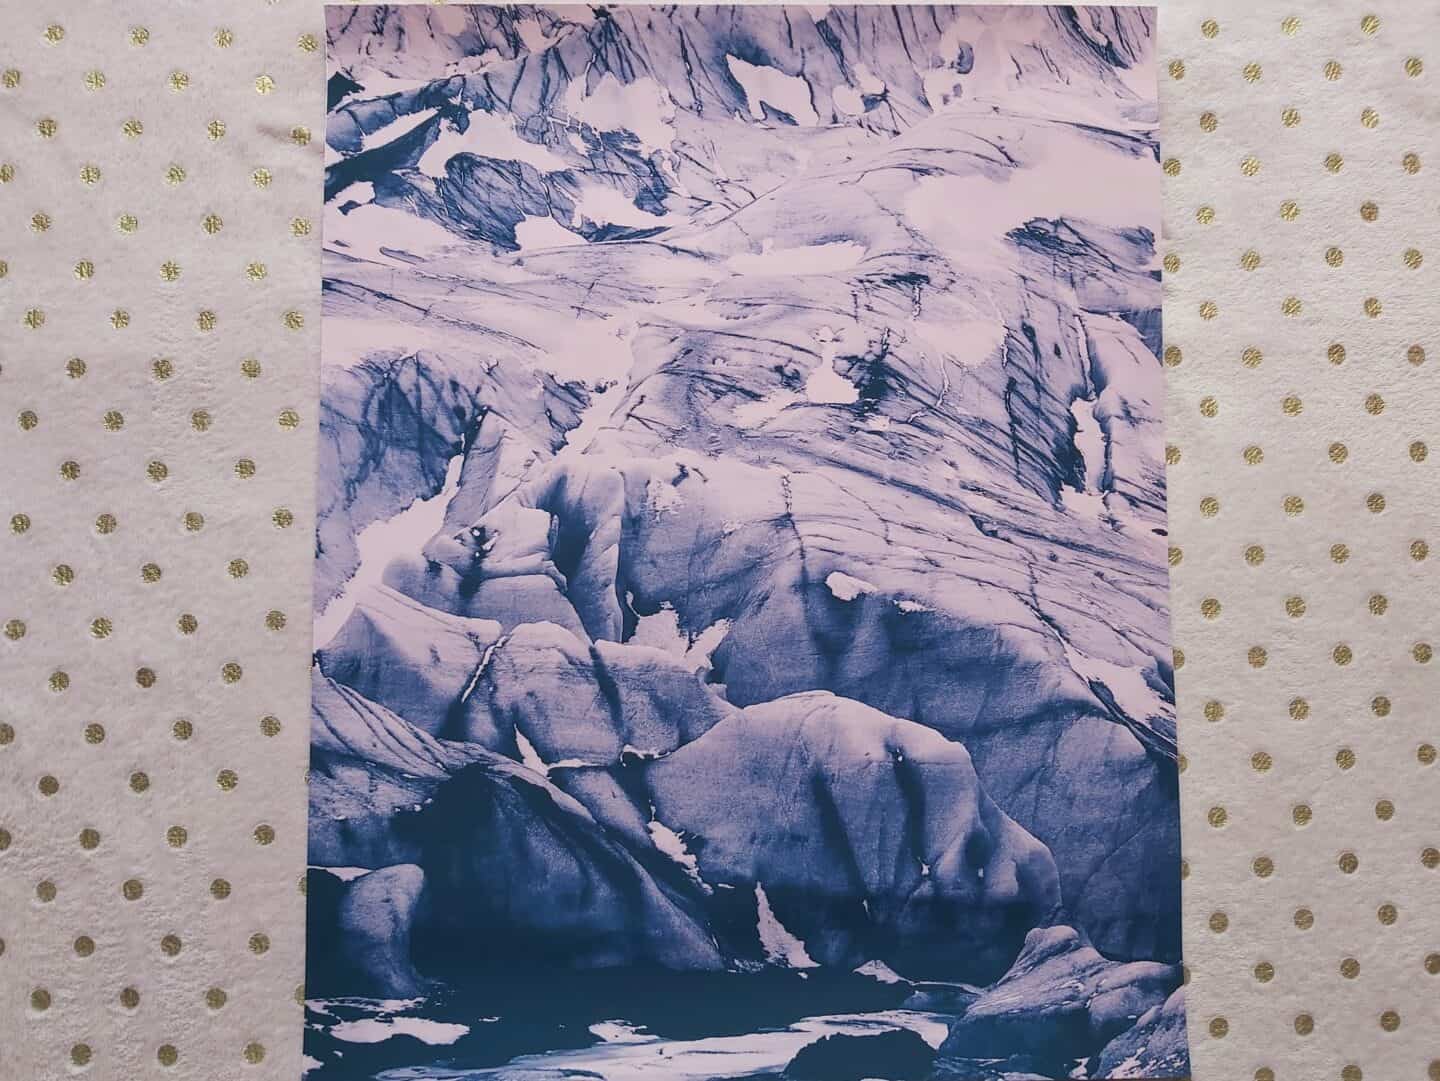 Abstract glacier artwork